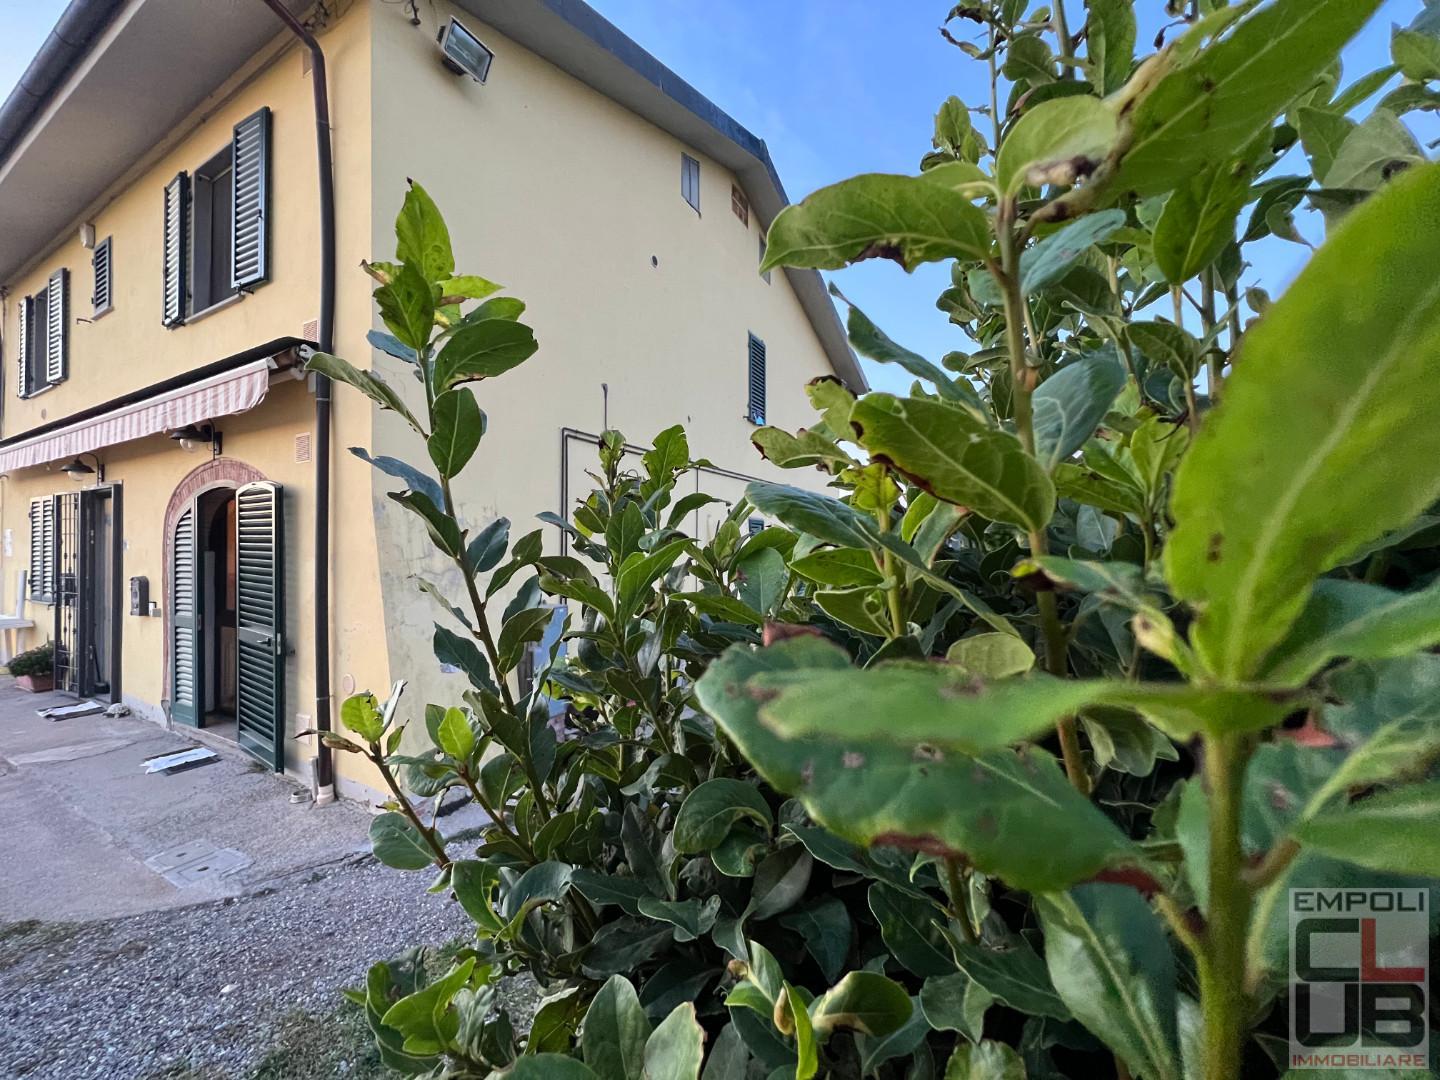 Villetta a schiera angolare in vendita a San Miniato (PI)